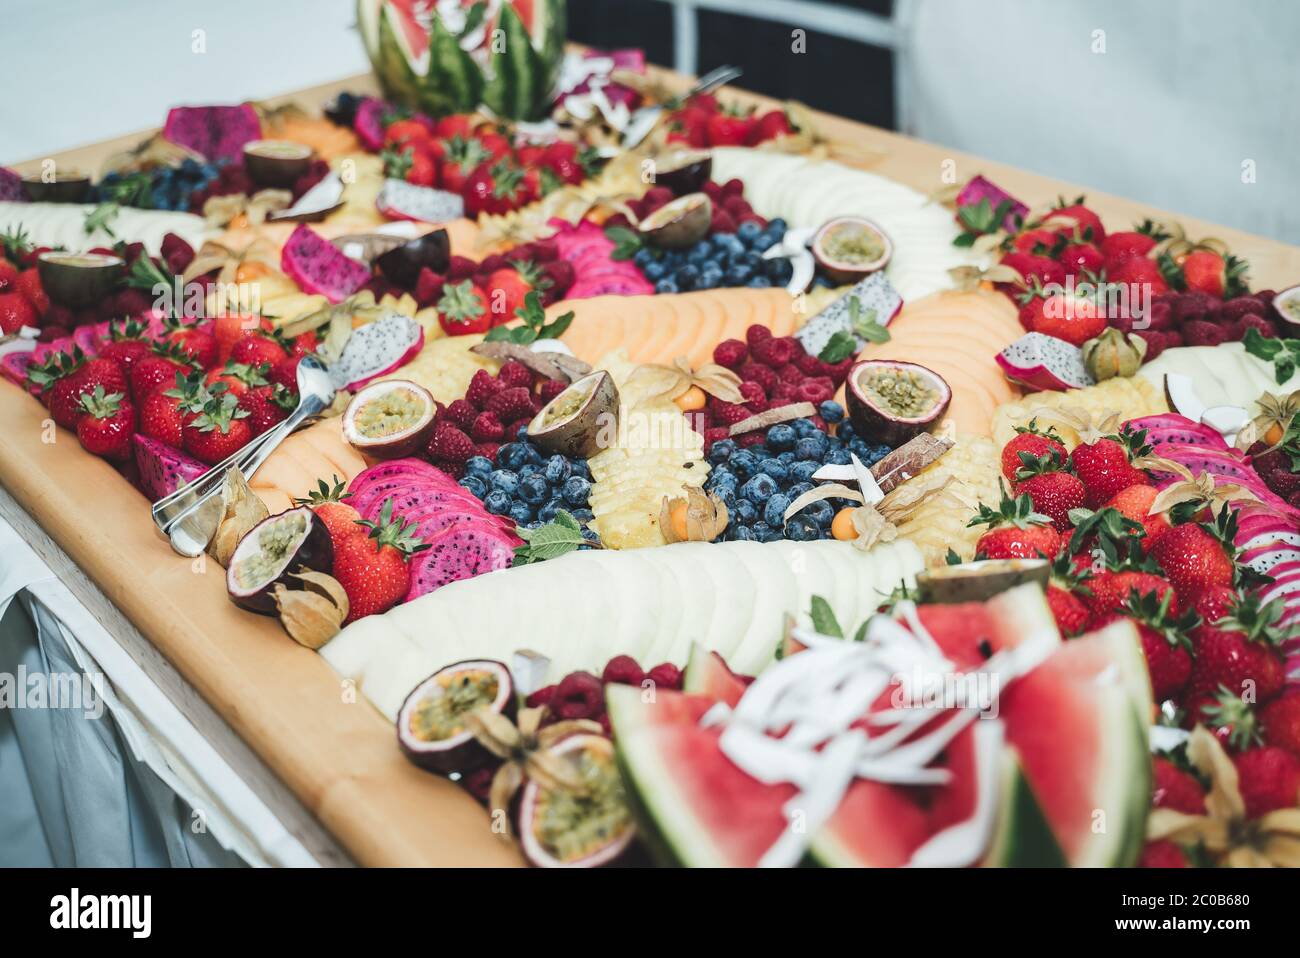 Farbenfroher Buffettisch mit verschiedenen frischen Früchten und Gemüse. Feier, Party, Geburtstag oder Hochzeit Konzept. Stockfoto